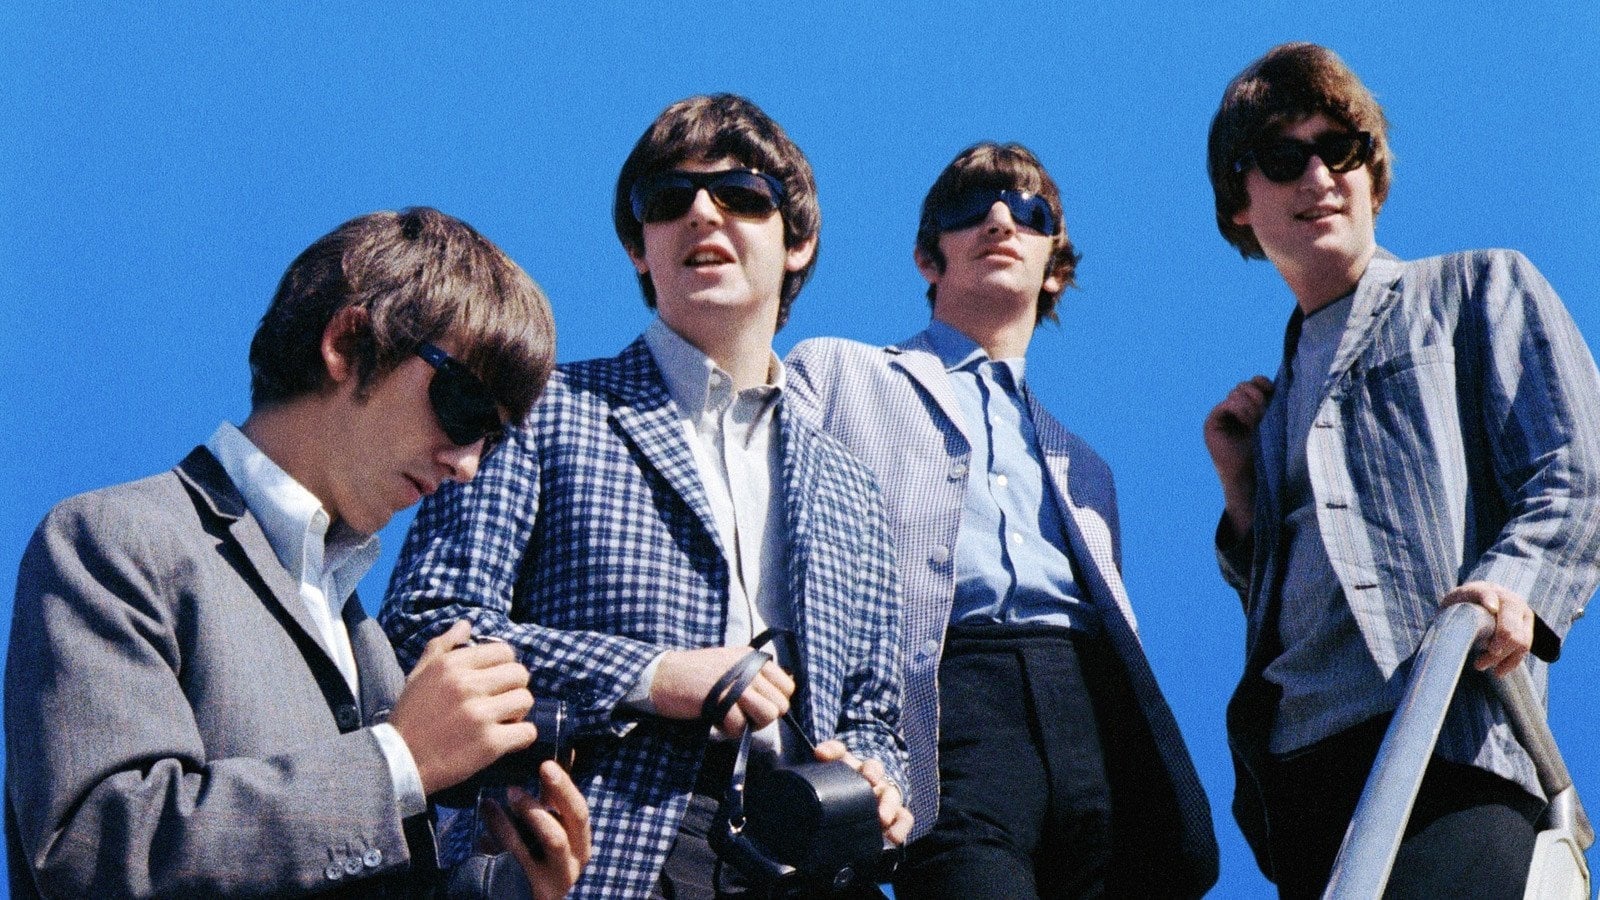 The Beatles - Nyolc nap egy héten - A turné-évek